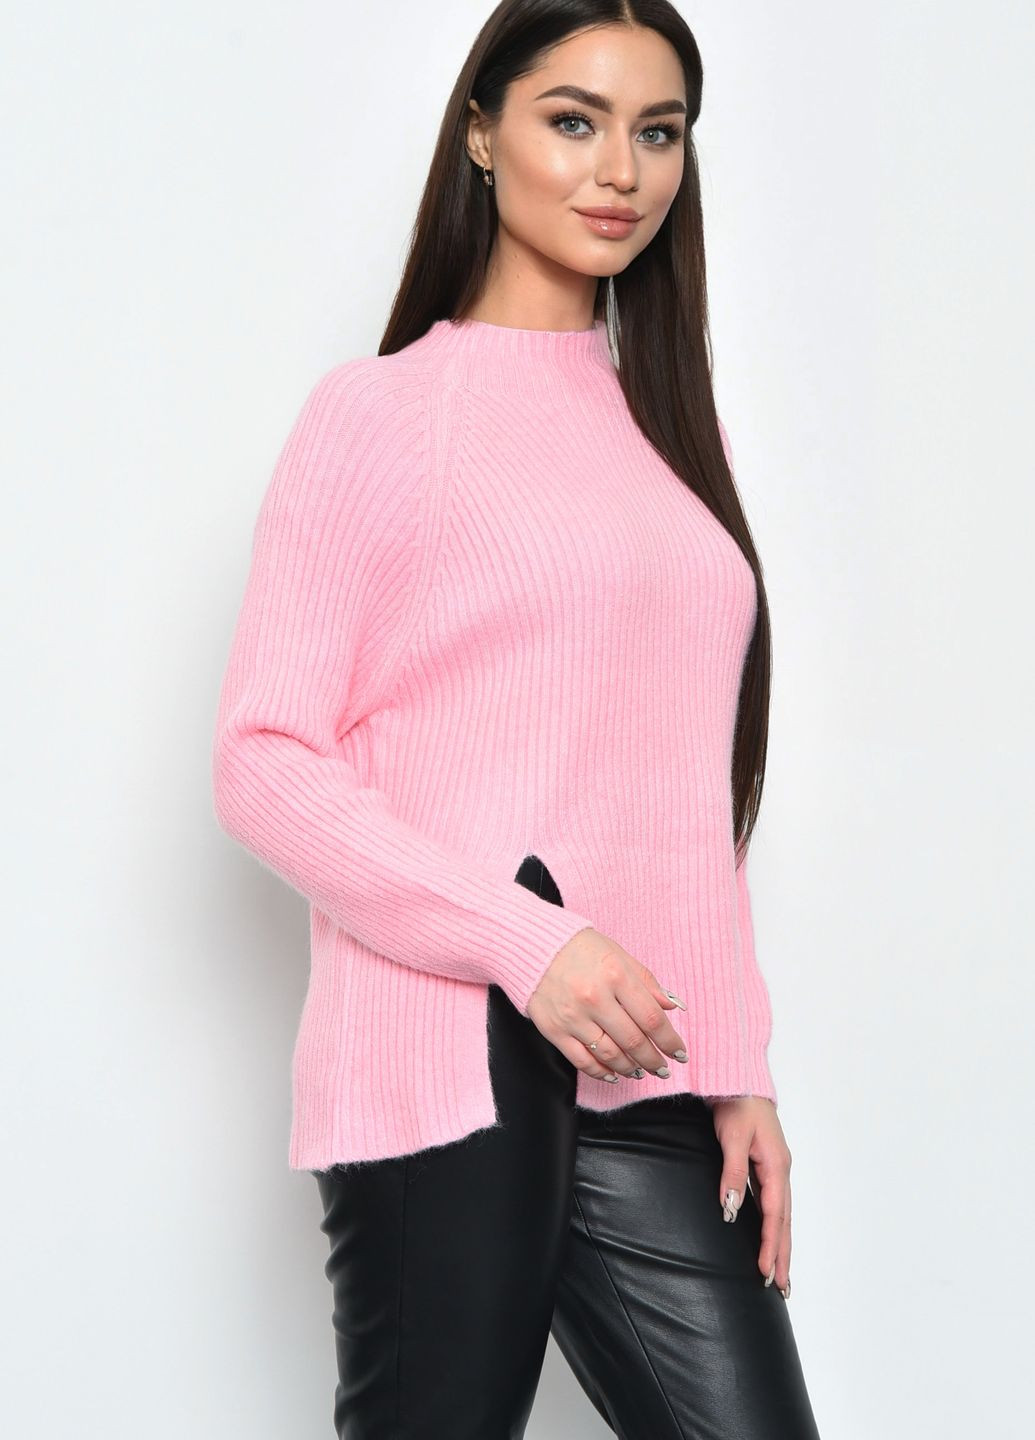 Розовый зимний свитер женский акриловый розового цвета пуловер Let's Shop